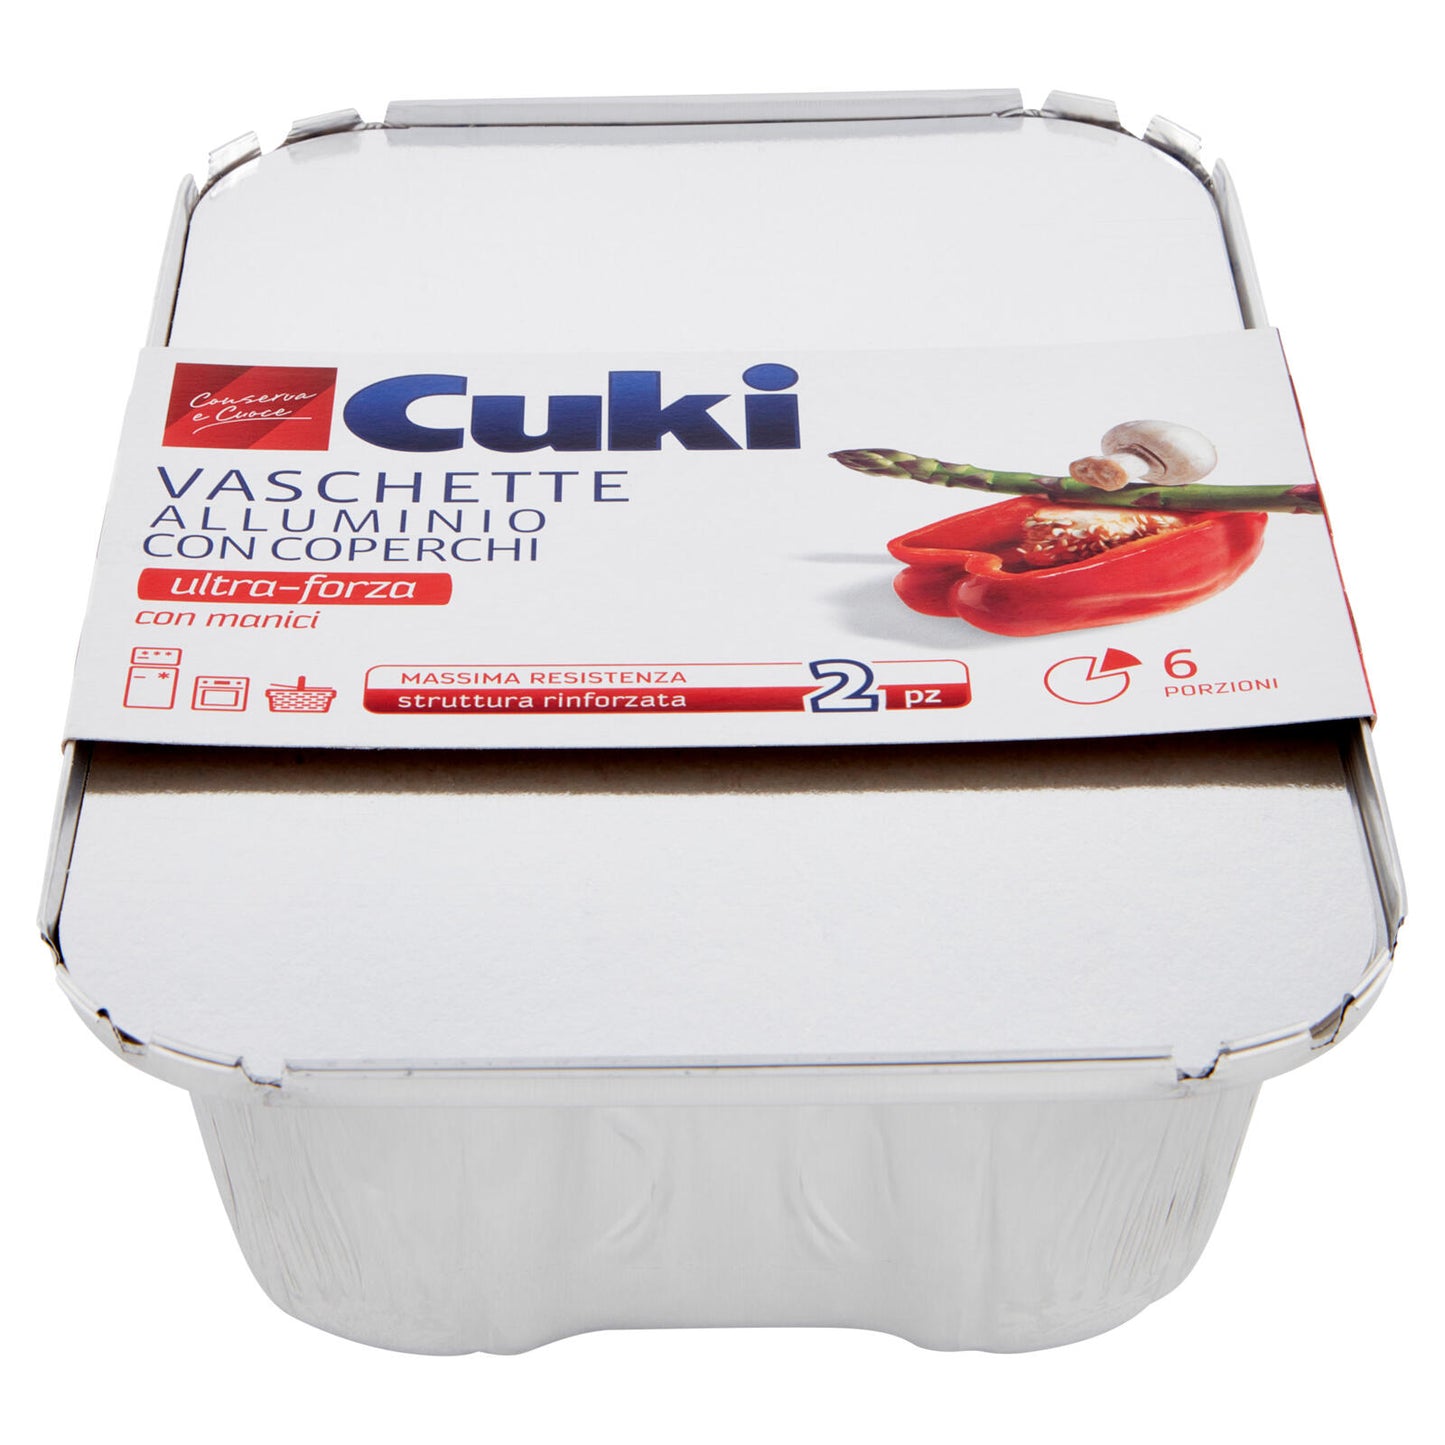 Cuki Conserva e Cuoce Vaschette Alluminio con Coperchi 6 porzioni 2 pz